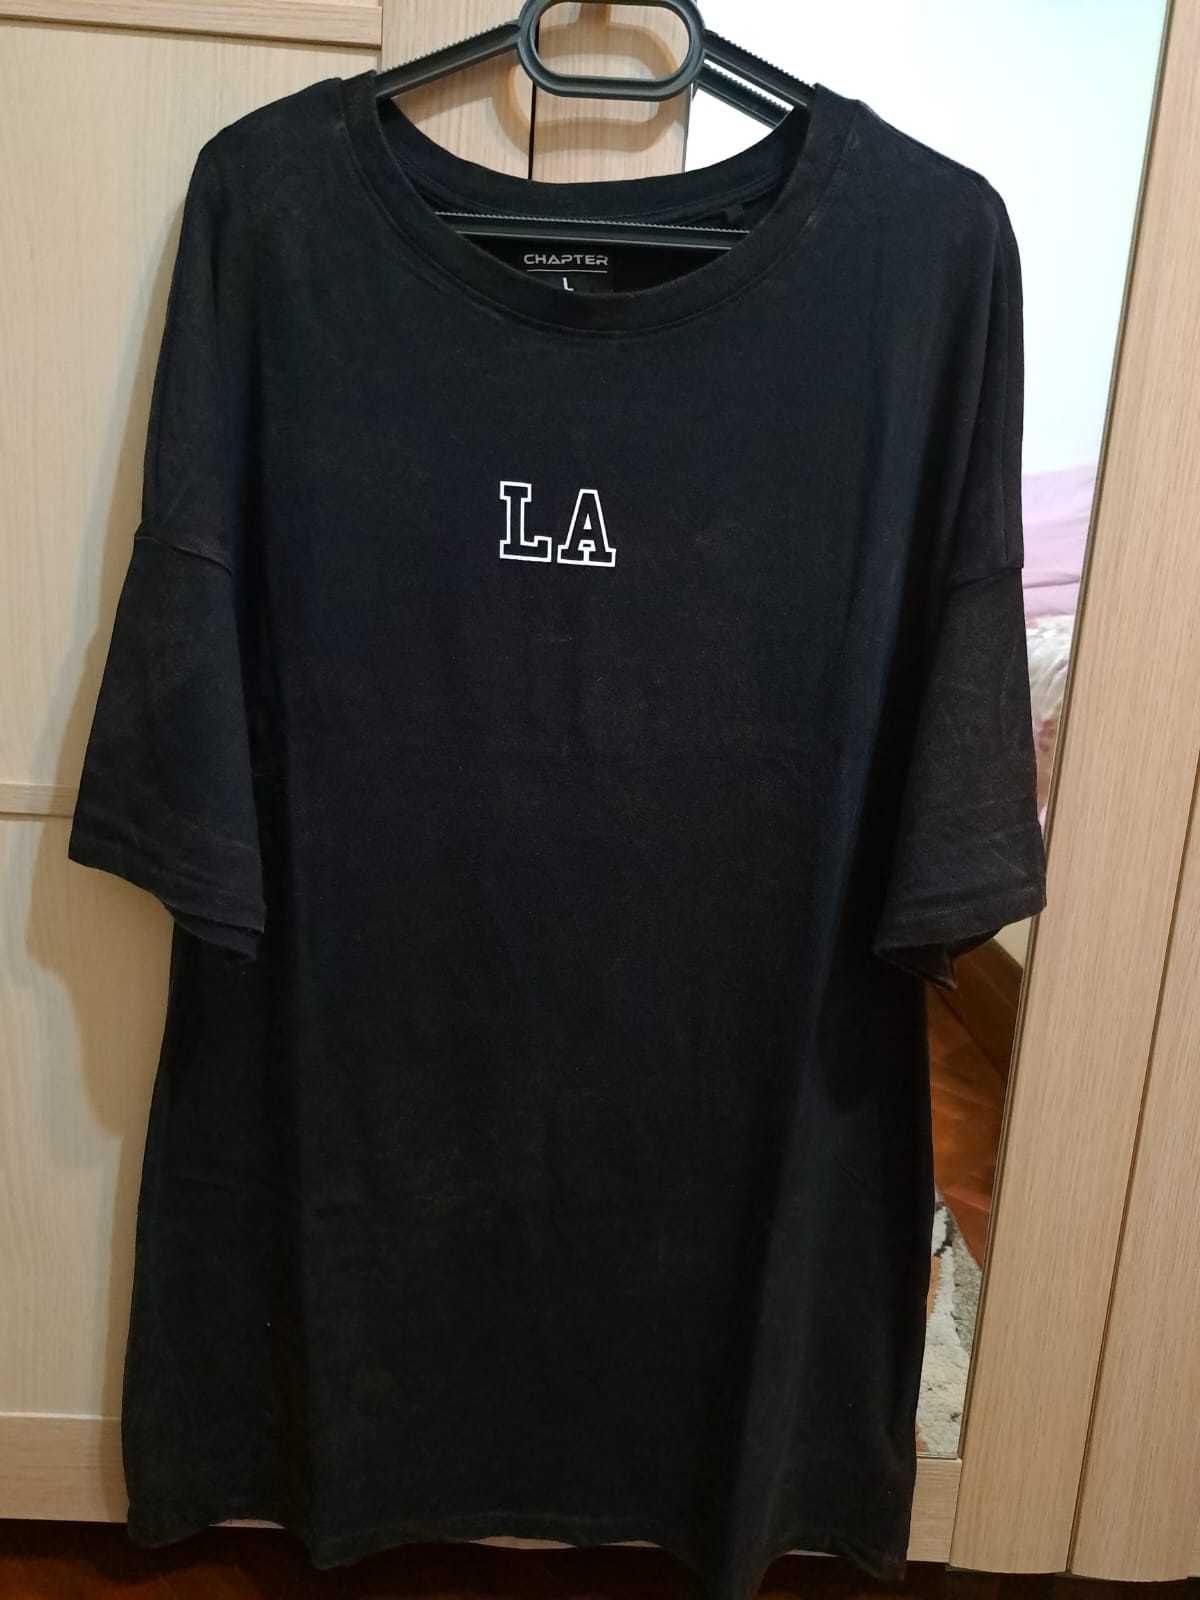 Tricouri L (5 tricouri 40 lei)